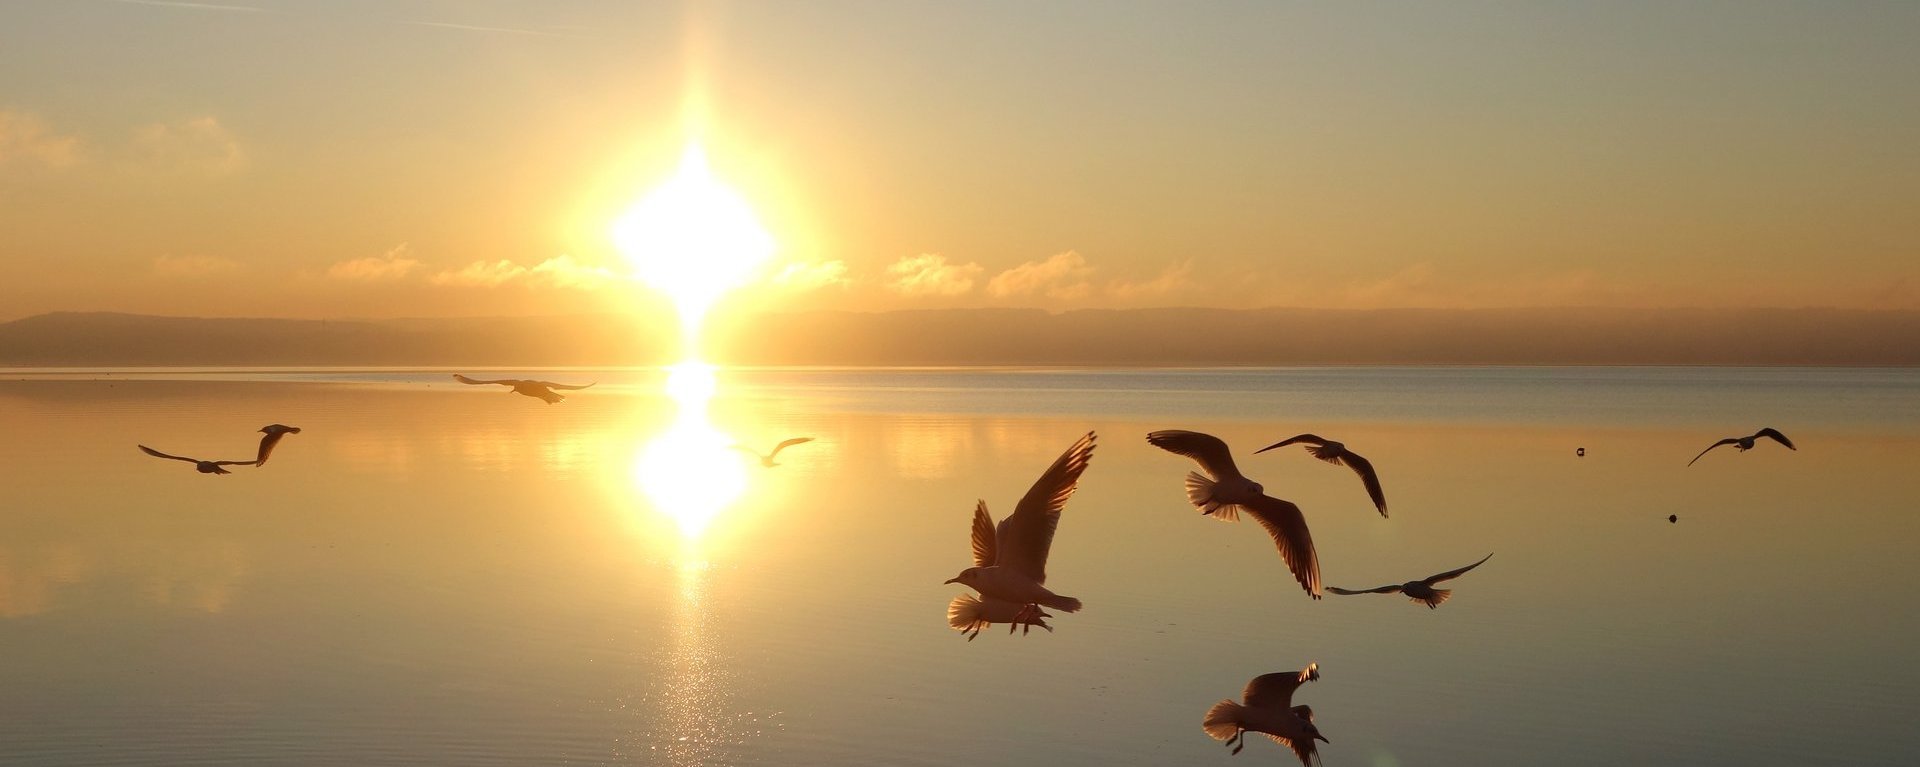 Natur: der See mit Sonnenuntergang und im Vordergrund fliegen Möwen